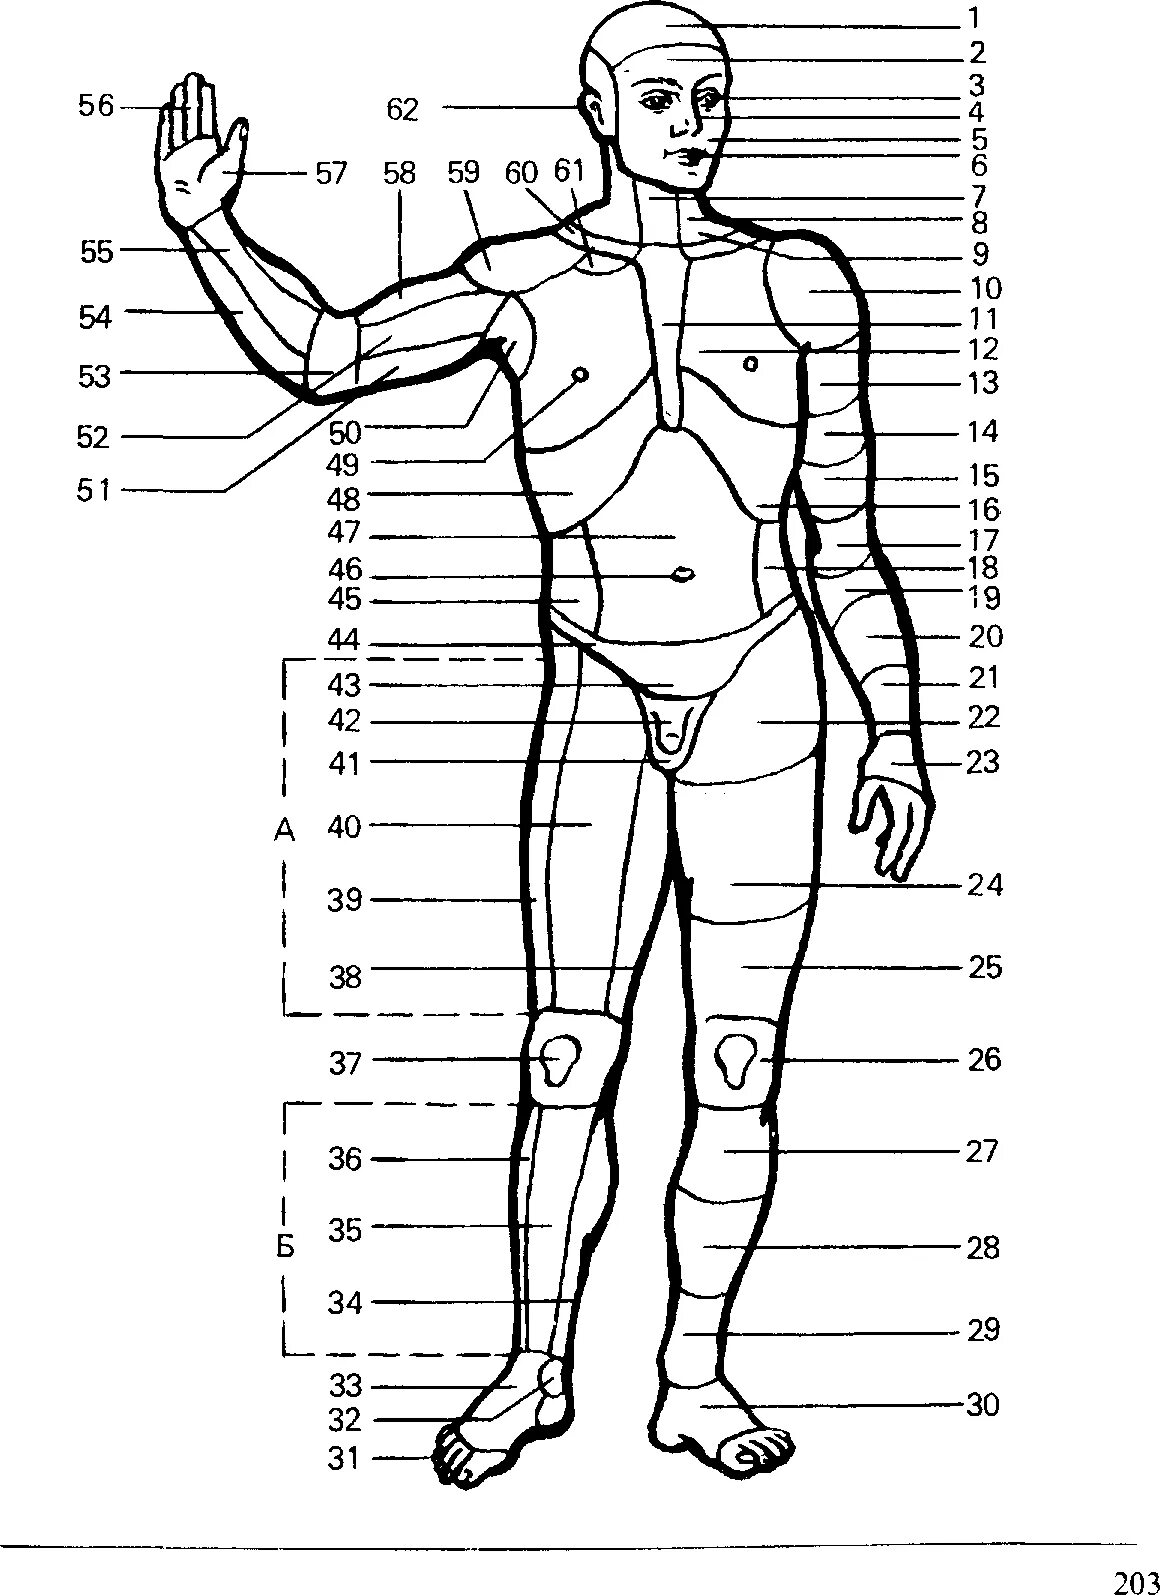 Наименование частей тела человека криминалистика. Анатомические области тела человека схема. Назовите части тела человека криминалистика. Название частей ттнла человкк.